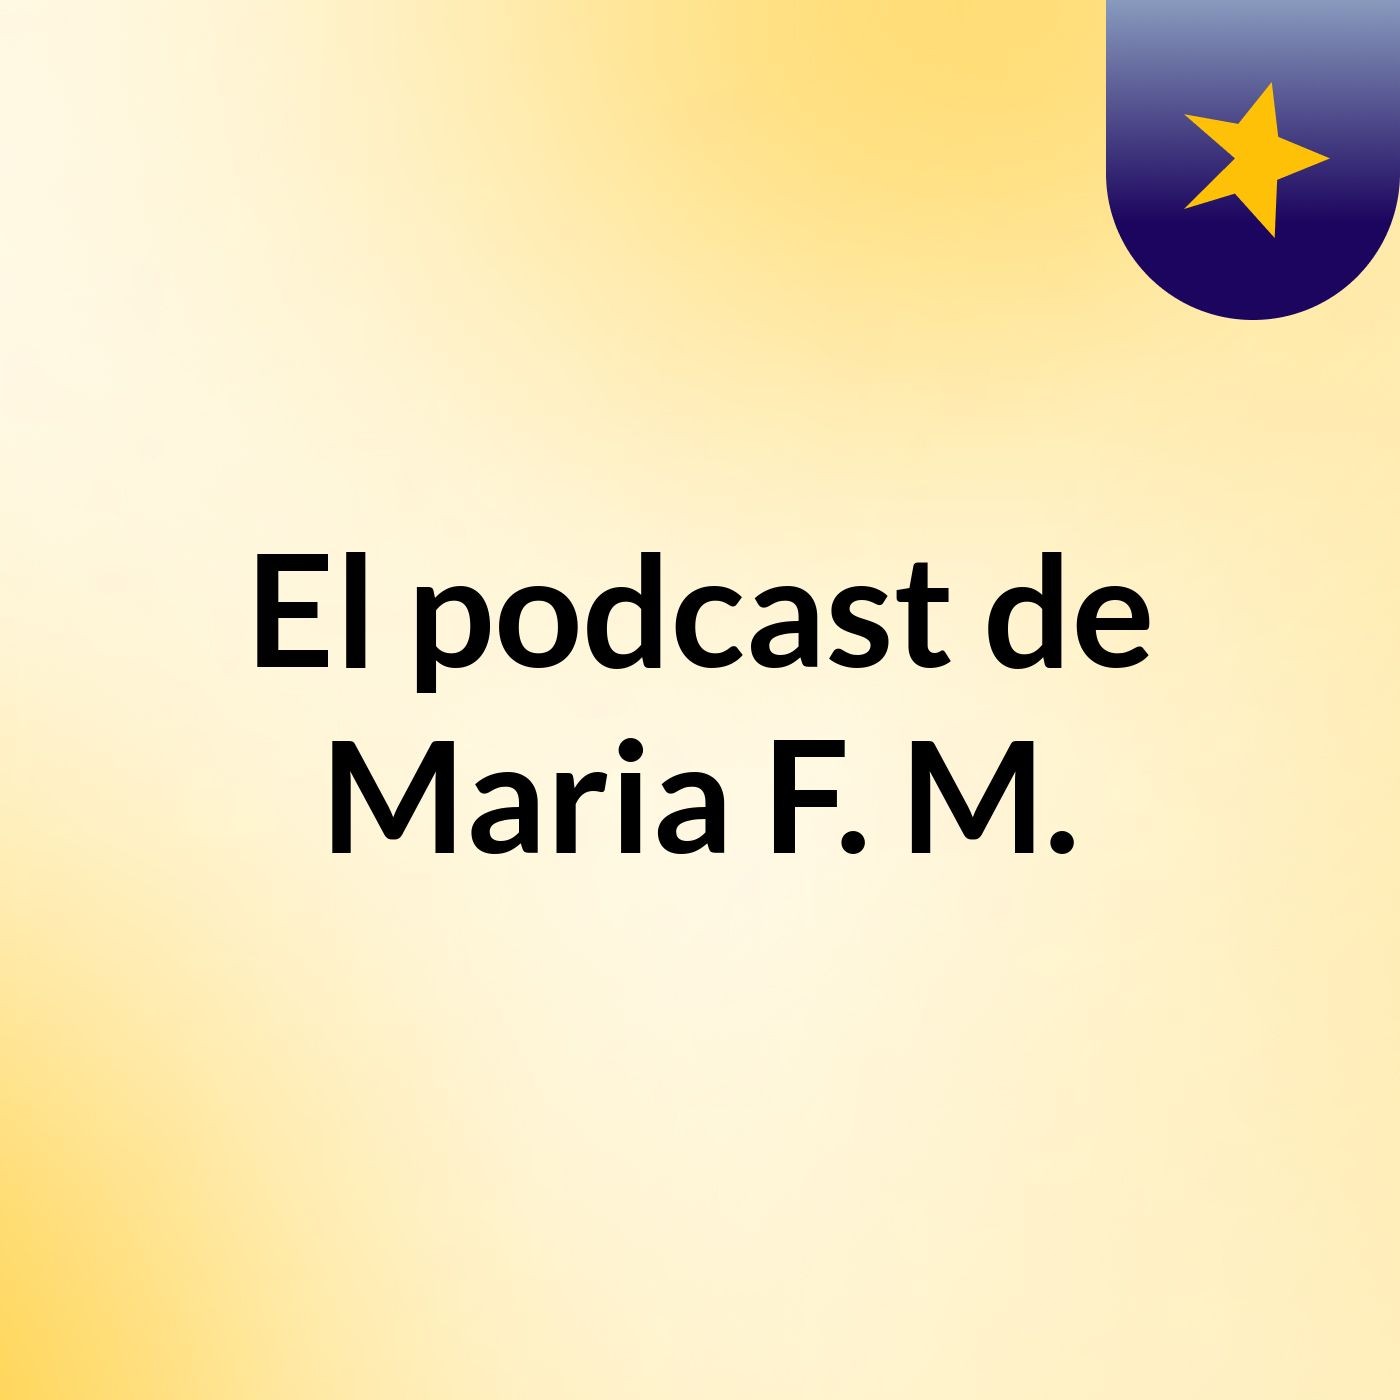 El podcast de Maria F. M.